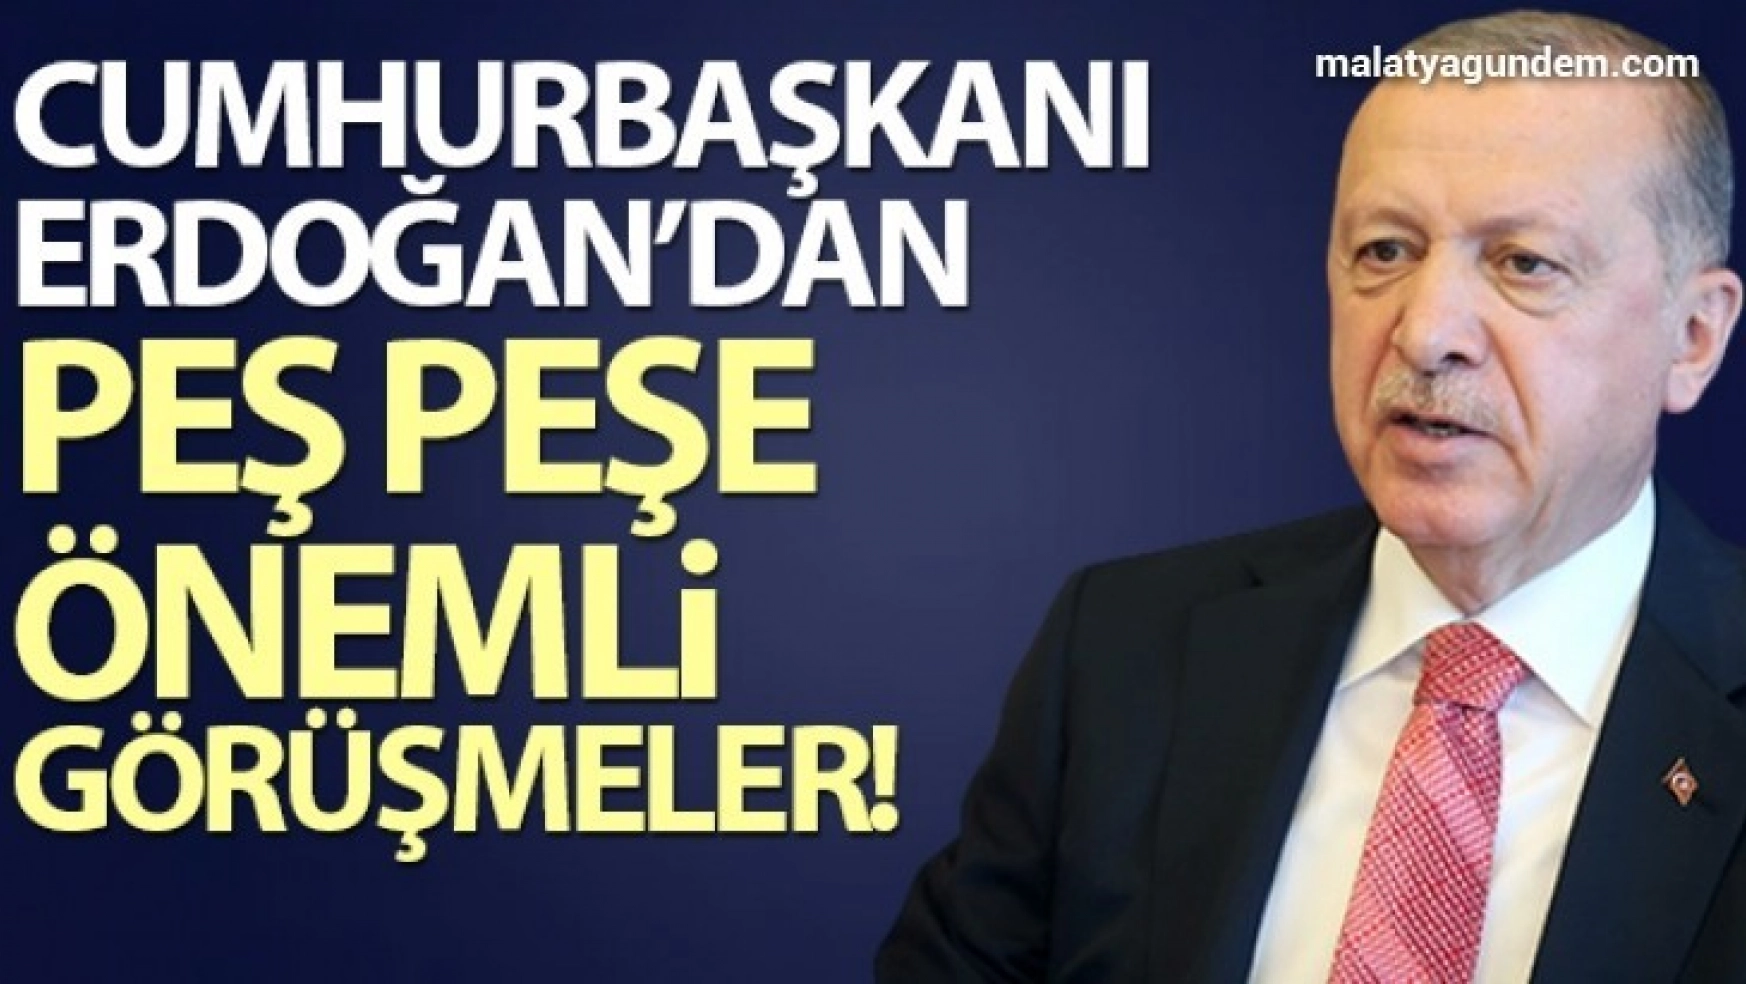 Cumhurbaşkanı Erdoğan'dan peş peşe önemli görüşmeler!